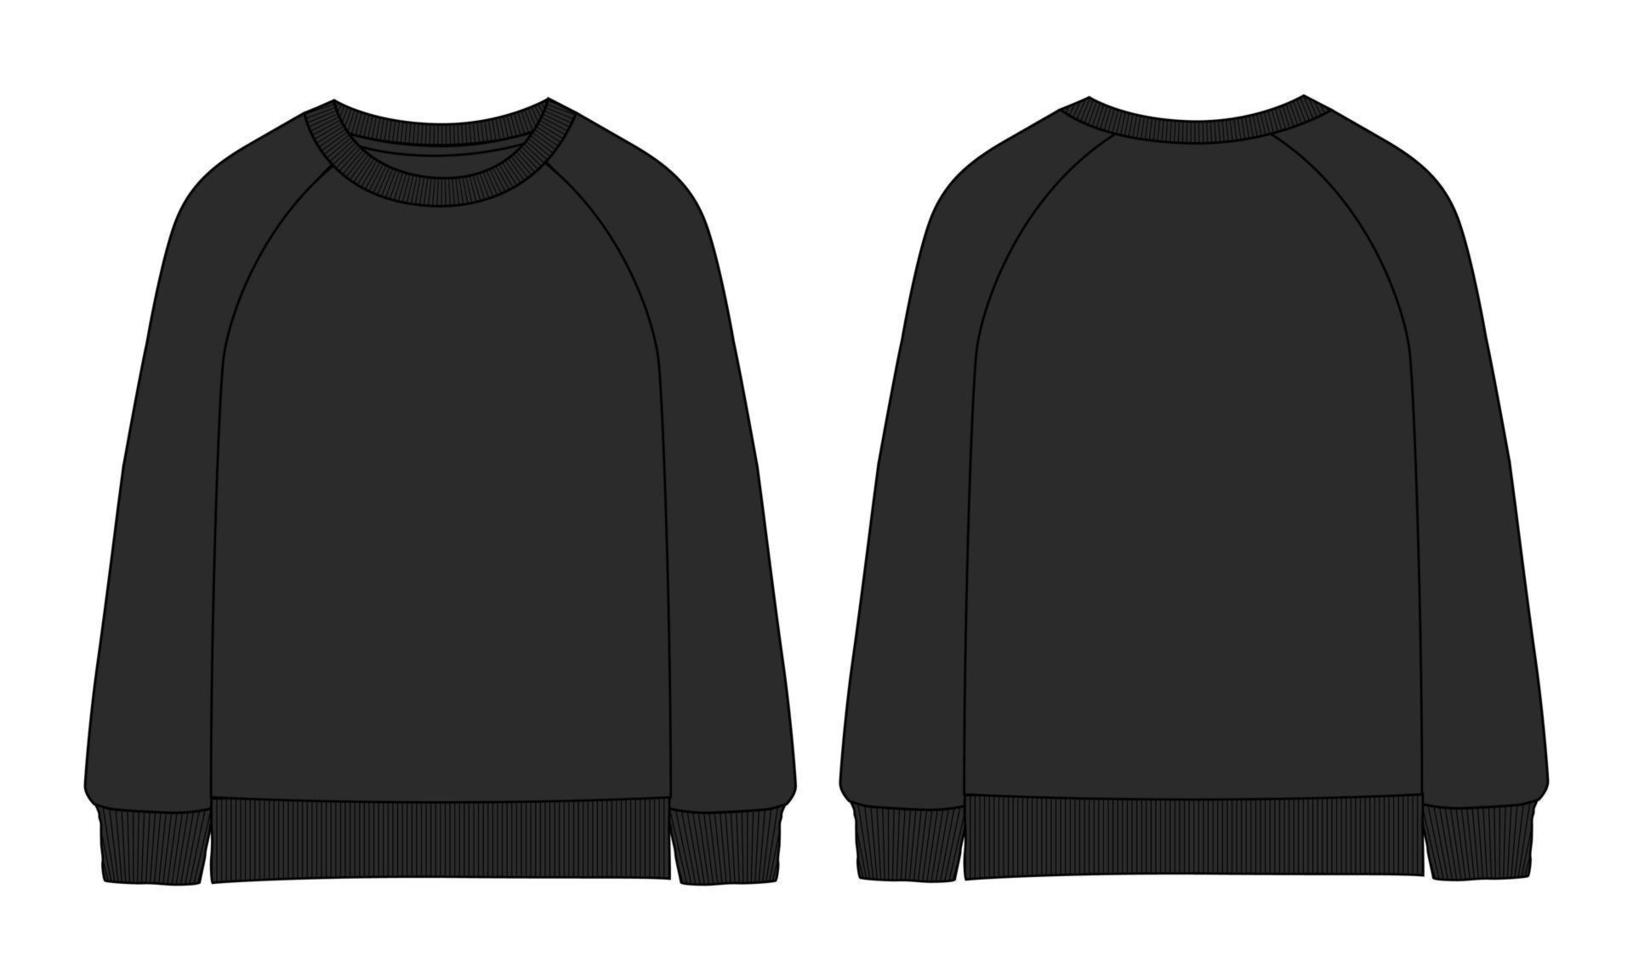 Langarm-Sweatshirt technische Mode flache Skizze Vektor-Illustration schwarze Farbvorlage Vorder- und Rückansichten isoliert auf weißem Hintergrund. vektor